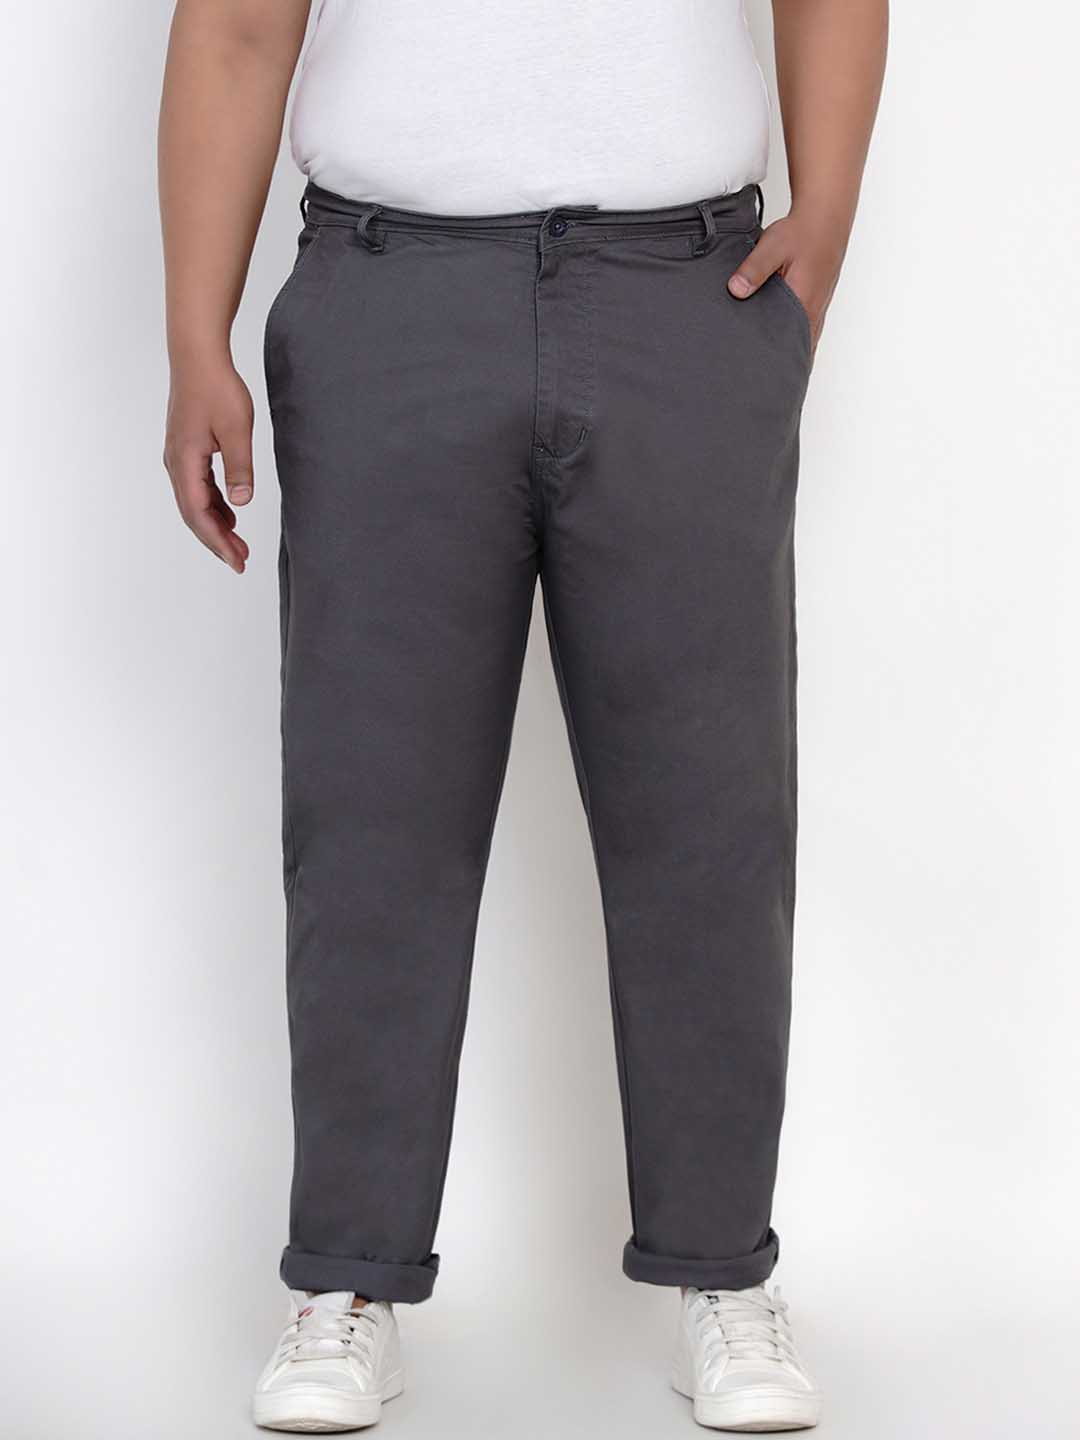 bottomwear/trousers/JPTR2195E/jptr2195e-1.jpg